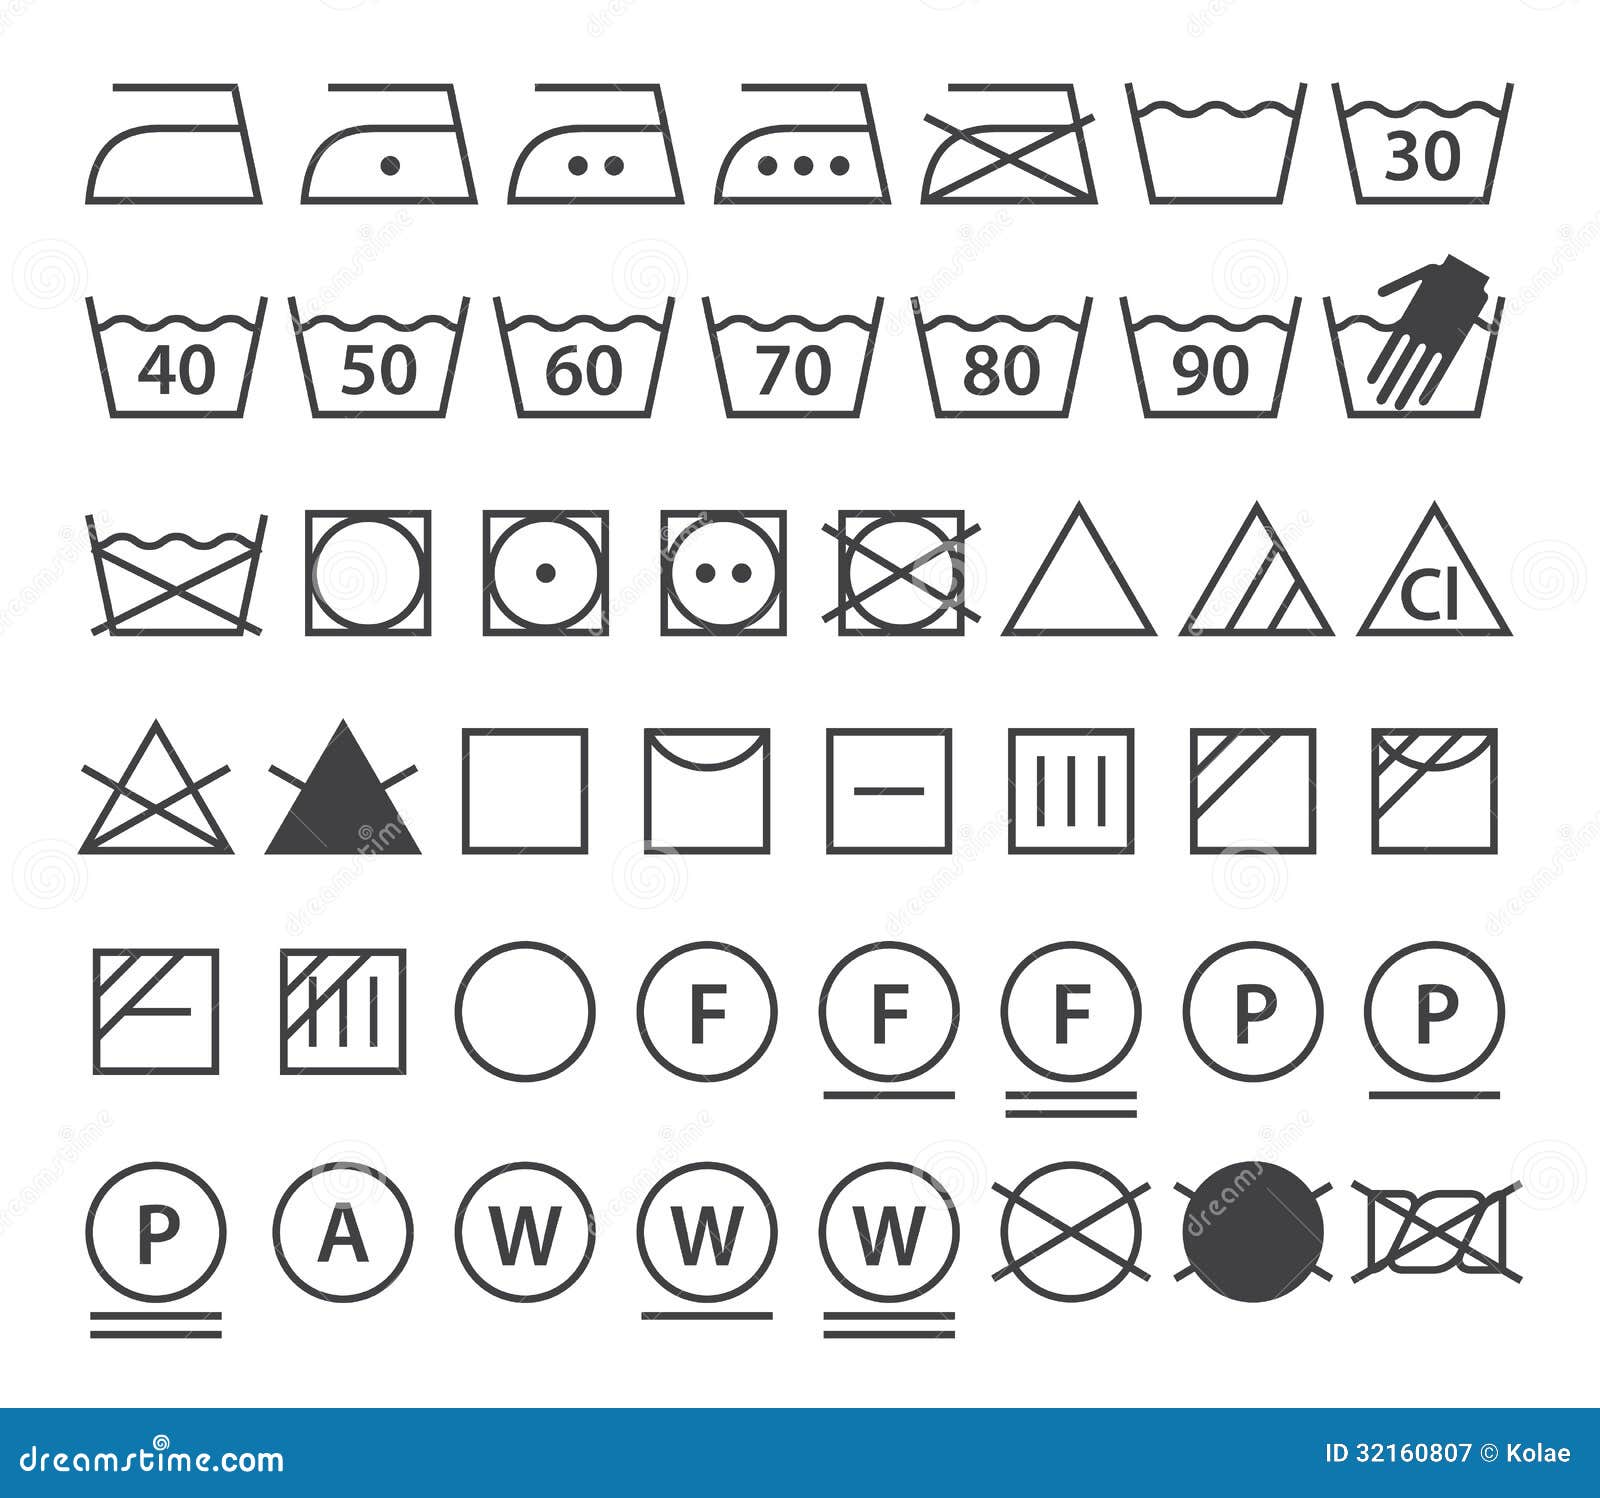 set of washing s (laundry icons)